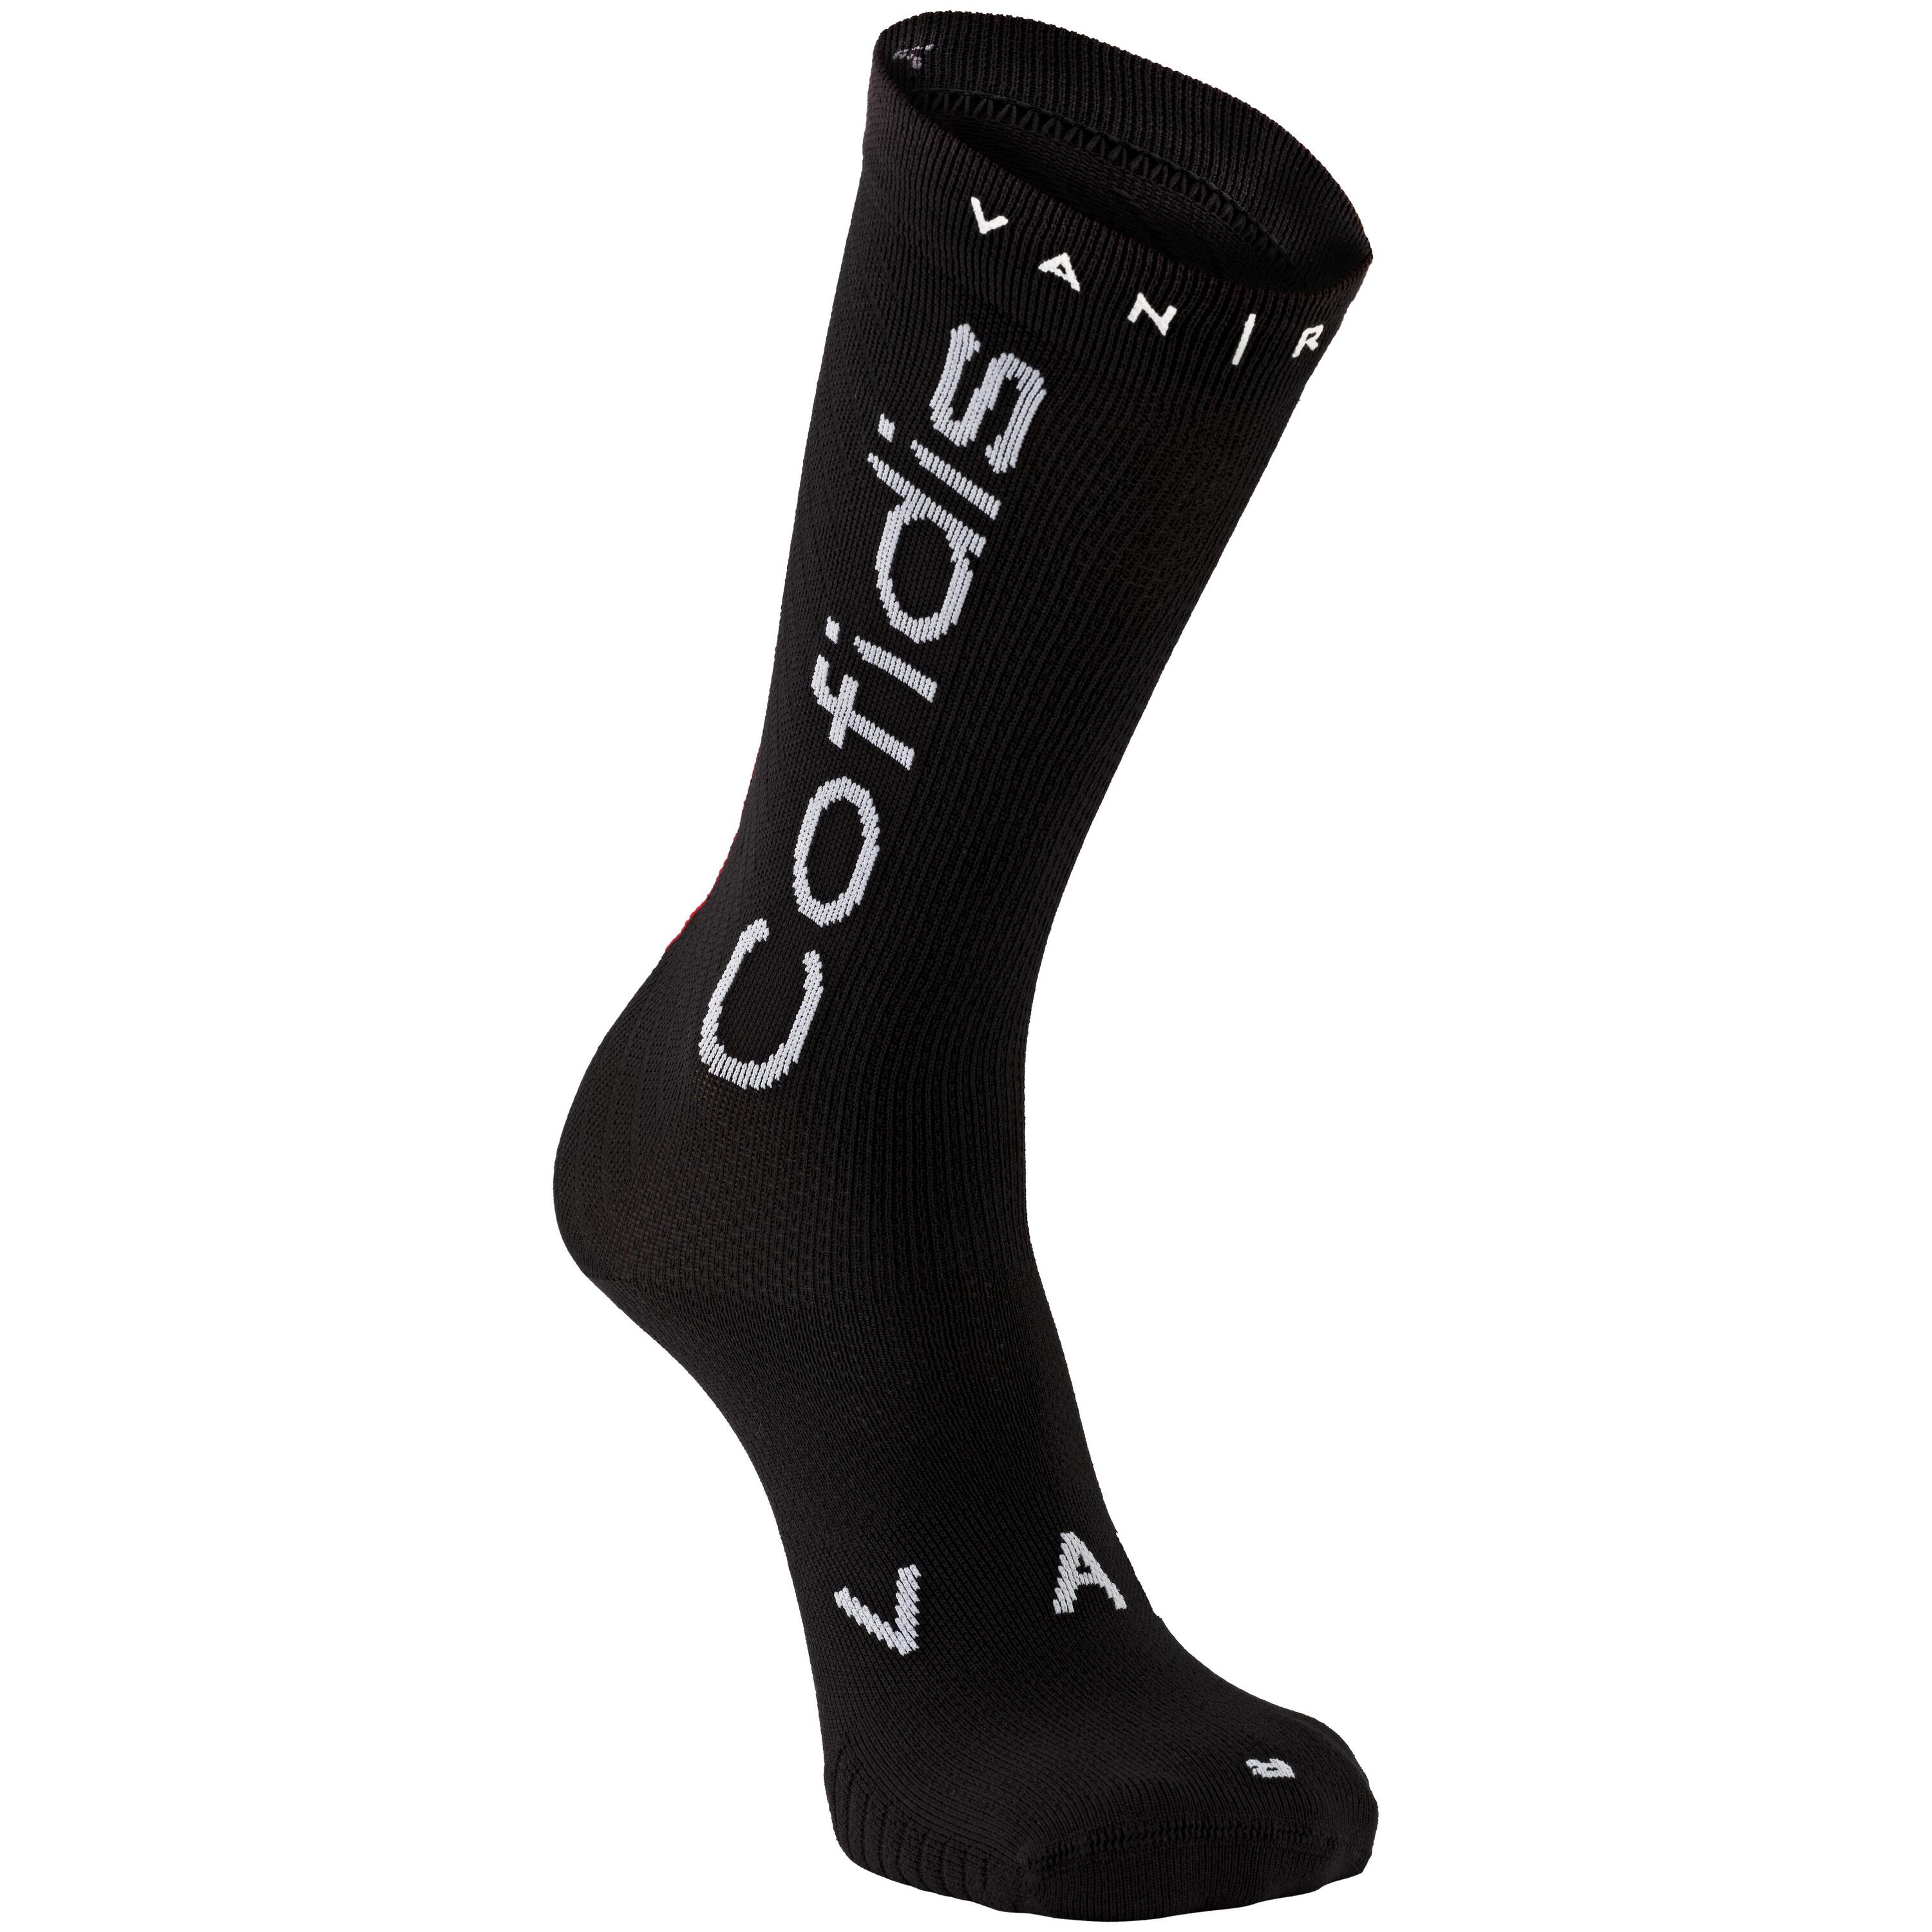 Cofidis Replica Road Cycling Socks - Black 1/3